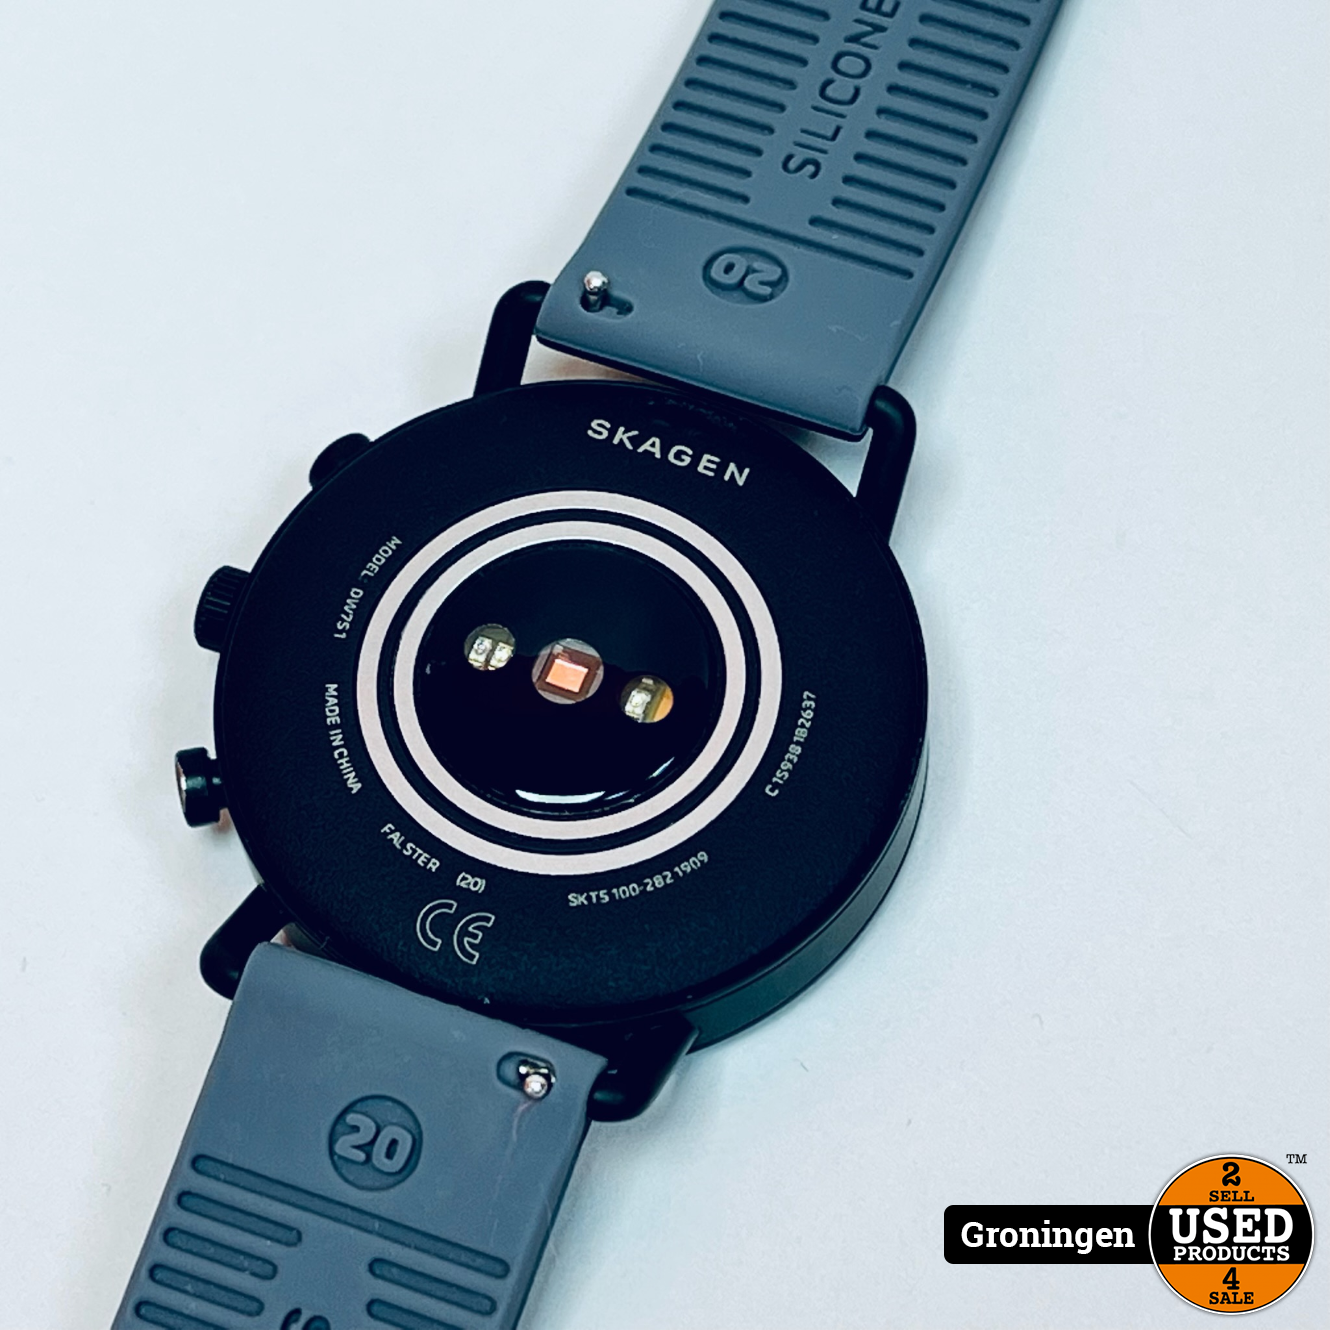 værtinde Ni Luske Skagen Connected Falster Gen 4 SKT5100 - Smartwatch - Zwart DW7S1 | incl.  laadkabel - Used Products Groningen